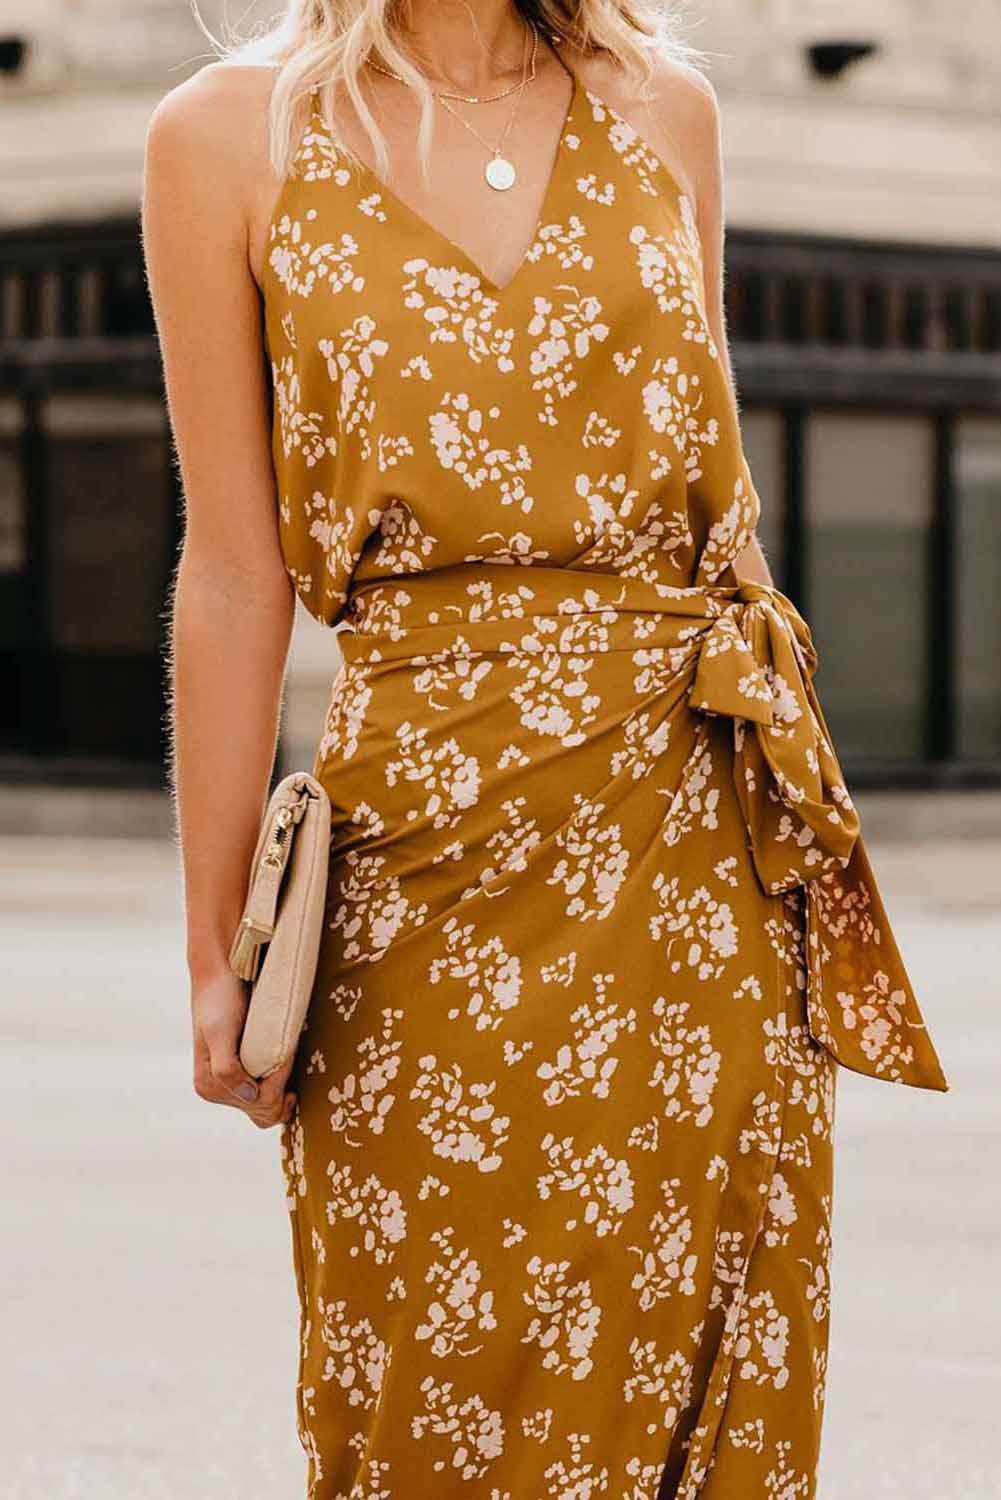 Wrap Midi Dress - Alycia Mikay Fashion 